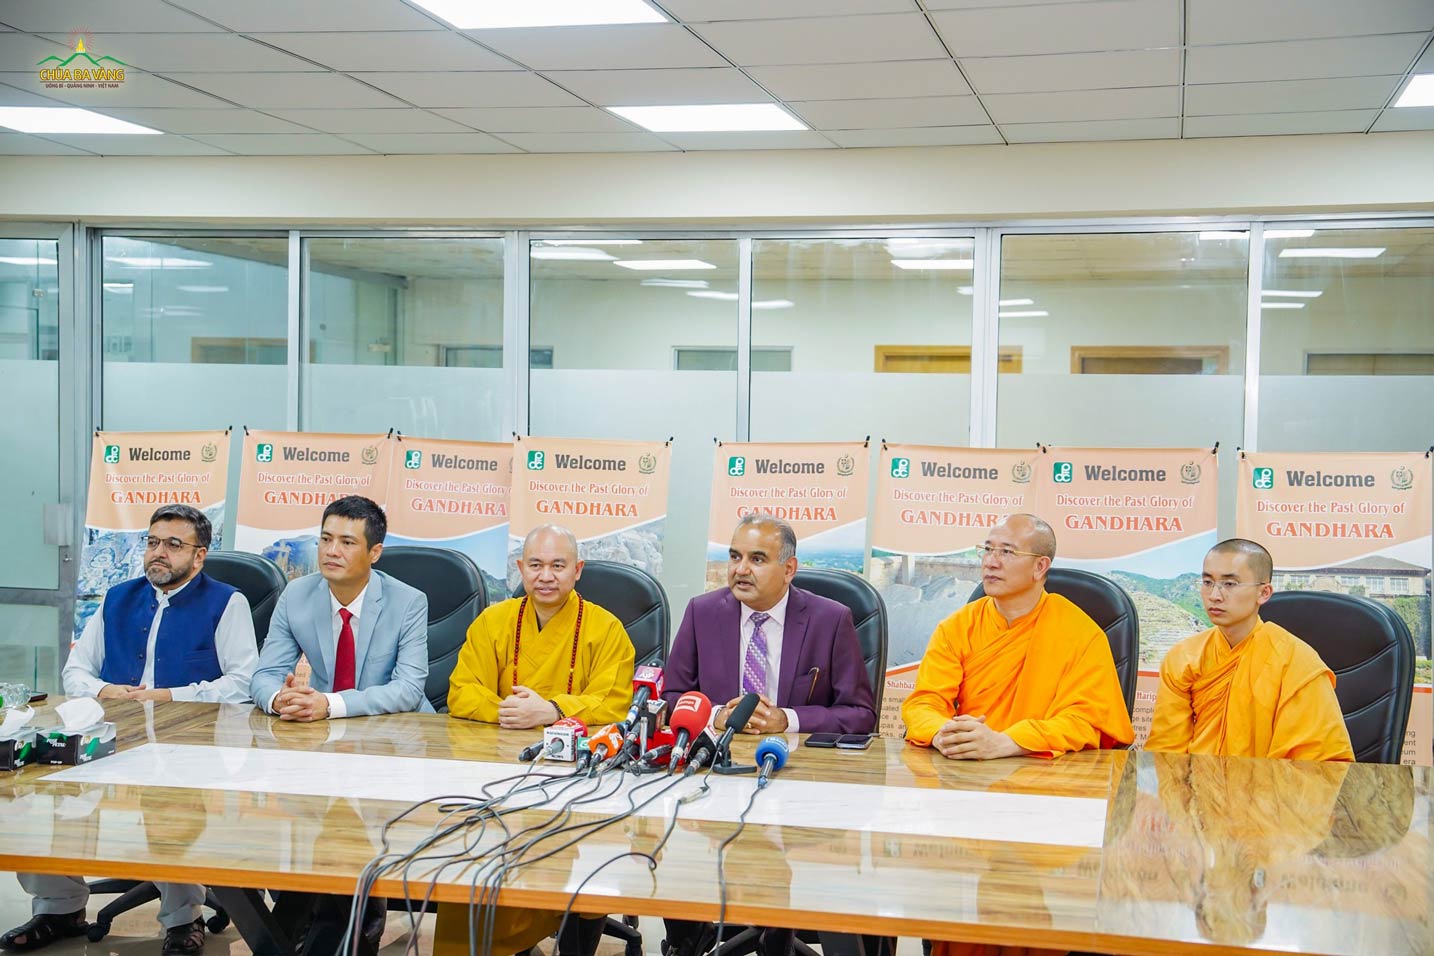 Toàn cảnh buổi làm việc song phương giữa đại diện Giáo hội Phật giáo Việt Nam và Bộ trưởng, Quốc vụ khanh, Đặc phái viên của Thủ tướng Pakistan về Phát triển di sản Gandhara - Tiến sĩ Ramesh Kumar Vankwani